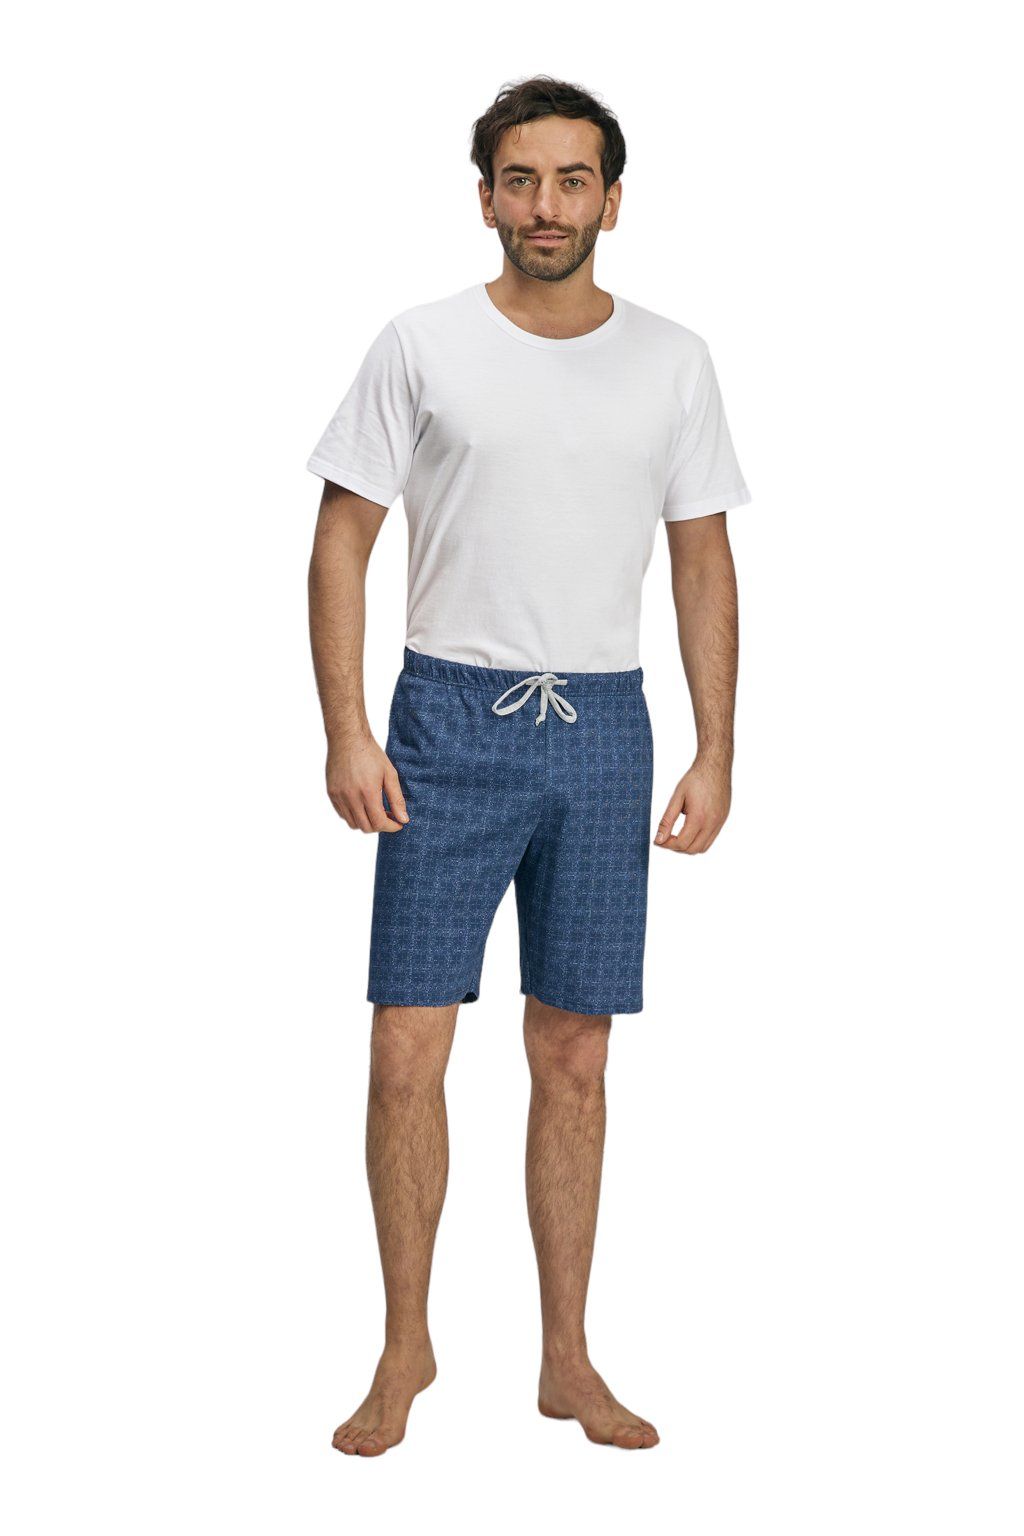 Pánské pyžamové kalhoty s krátkými nohavicemi, 204123 466, modrá - Velikost 3XL Wadima